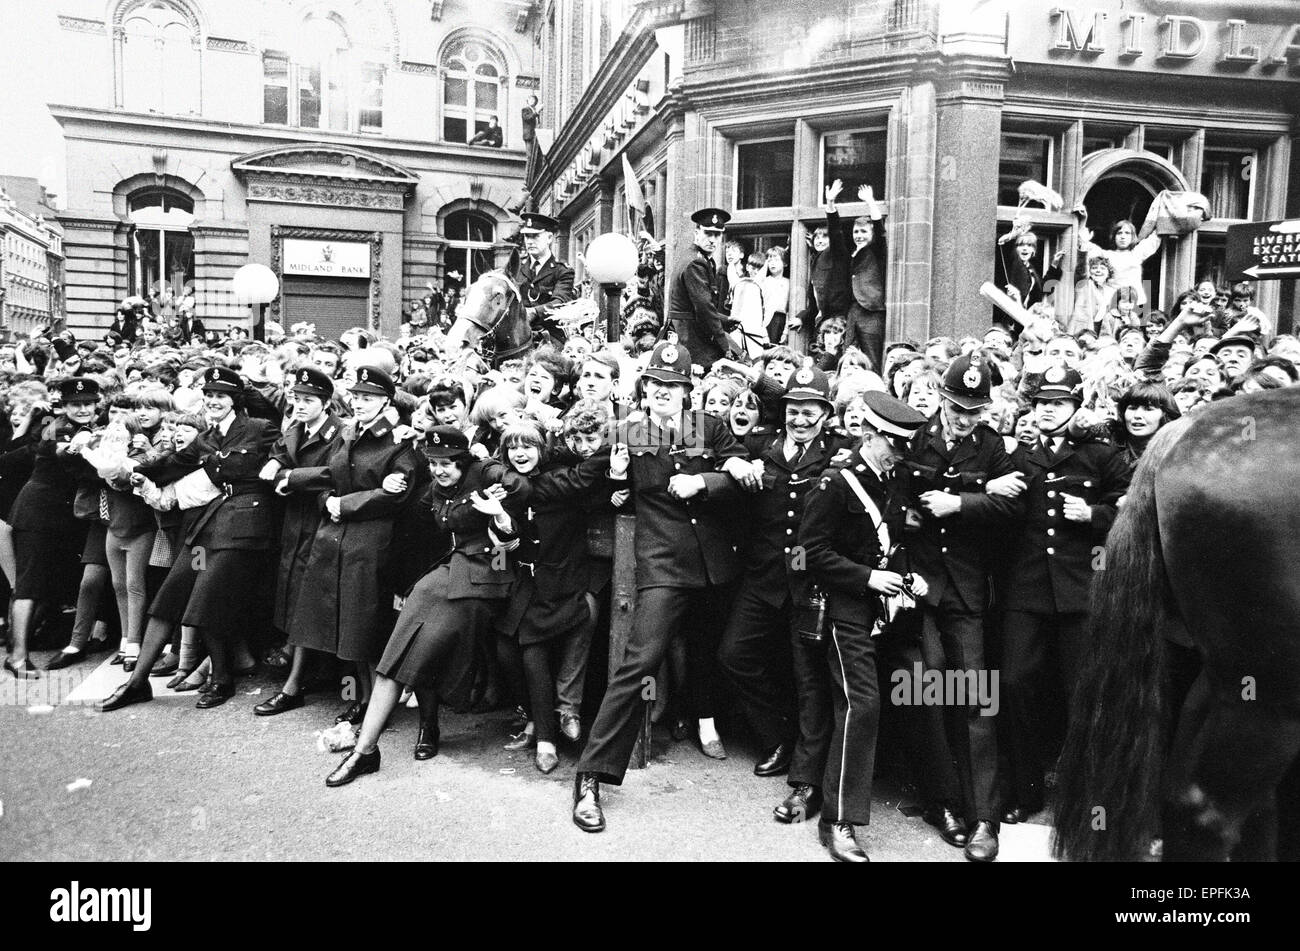 Le nord du Premier Ministre de 'Une journée de nuit'. Fans line up le long des rues dans l'espoir de voir les Beatles à leur arrivée pour le premier ministre à Liverpool. 10 juillet 1964. Banque D'Images